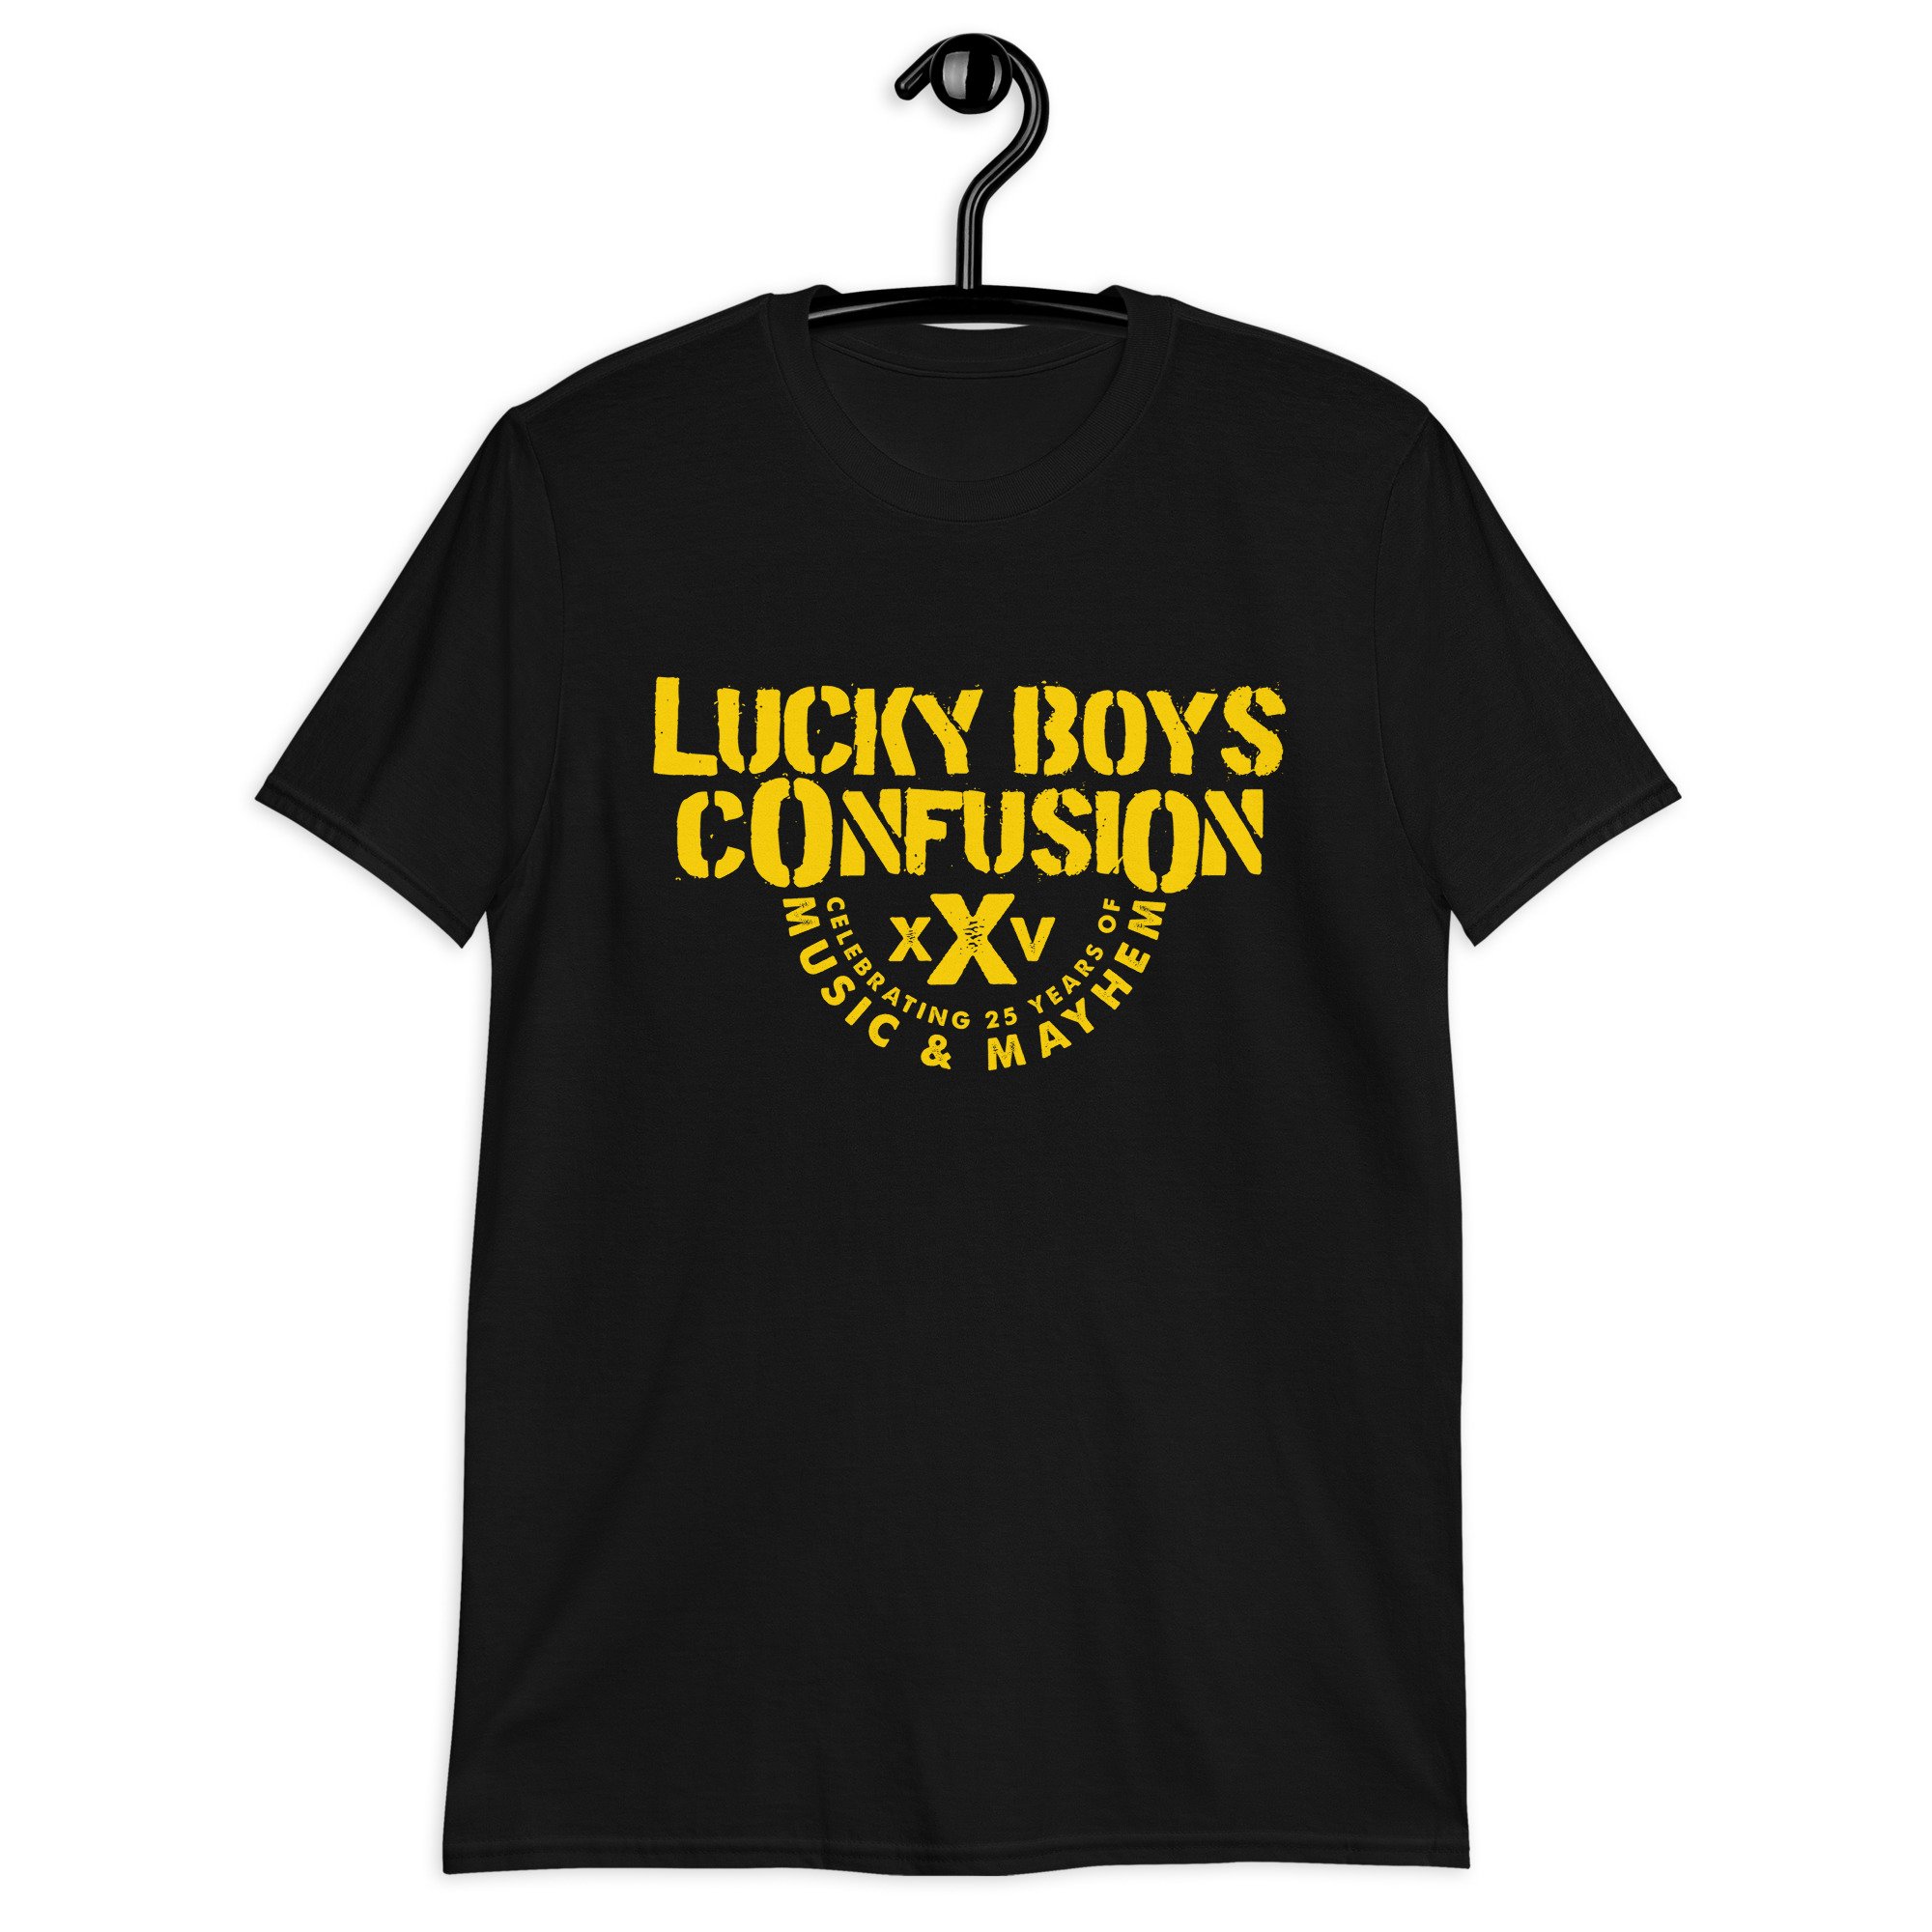 Lucky Brand Big Boys 8-20 Short Sleeve Just Lucky T-Shirt